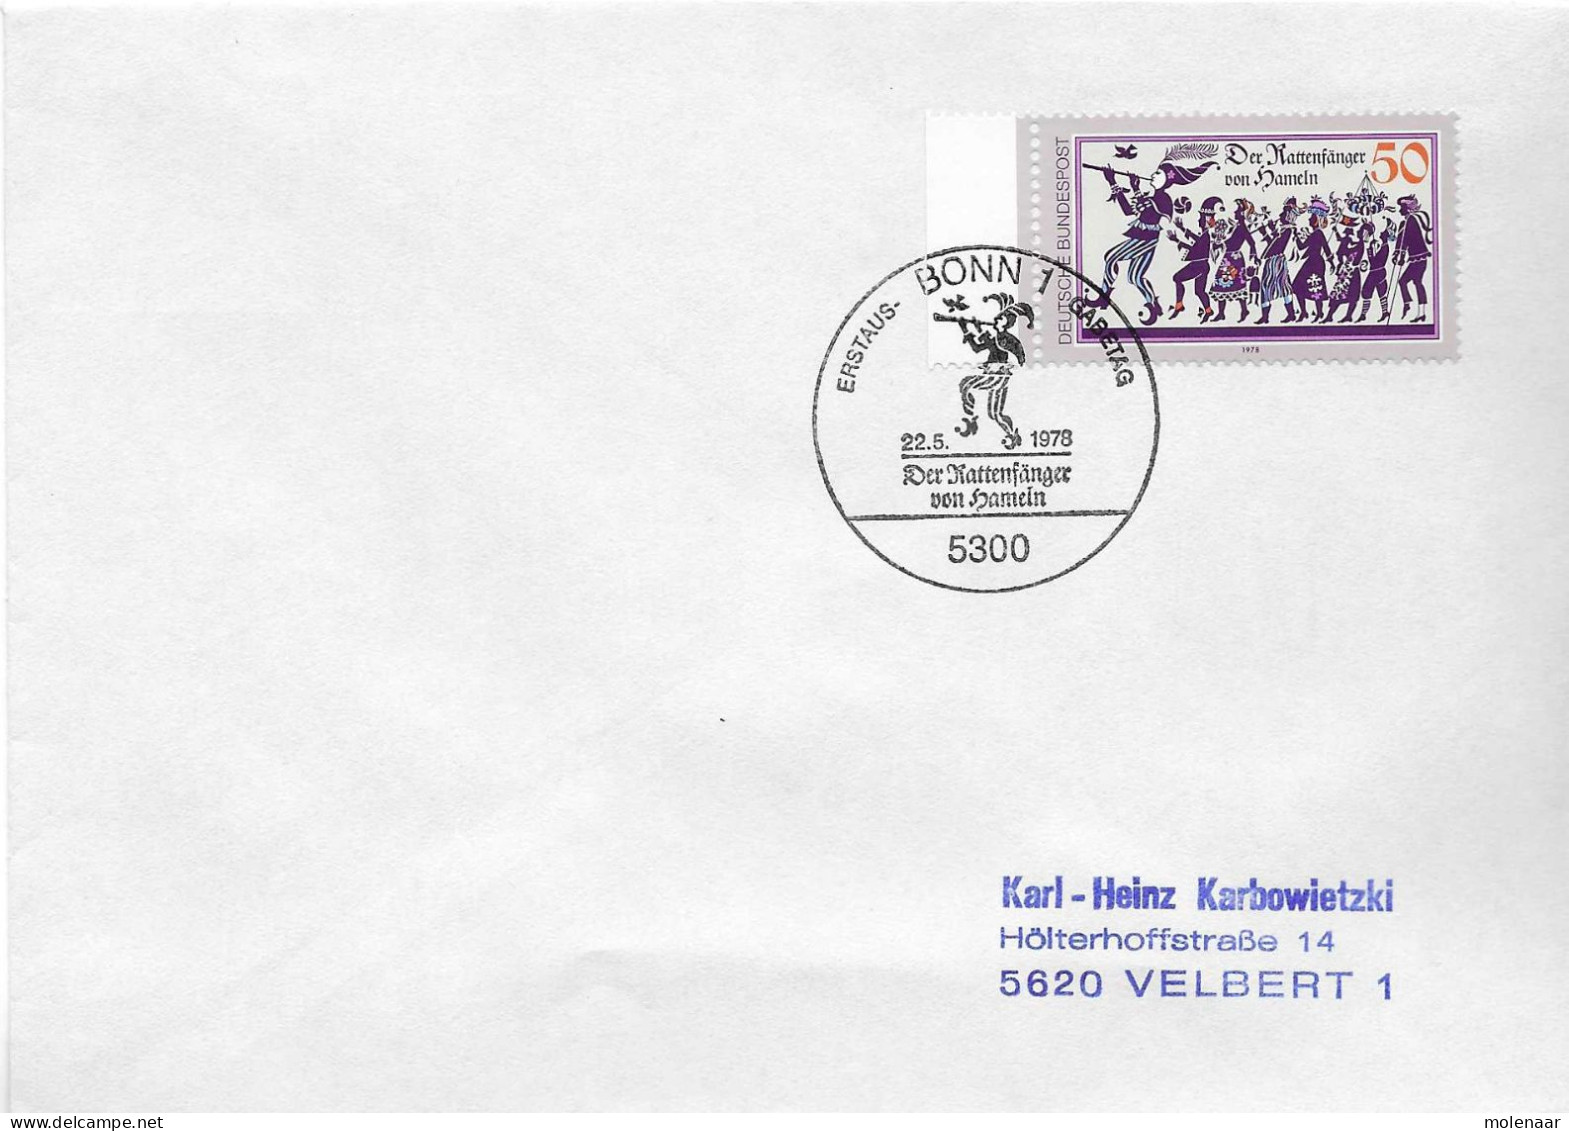 Postzegels > Europa > Duitsland > West-Duitsland > 1970-1979 > Brief Met No. 972 (17367) - Briefe U. Dokumente